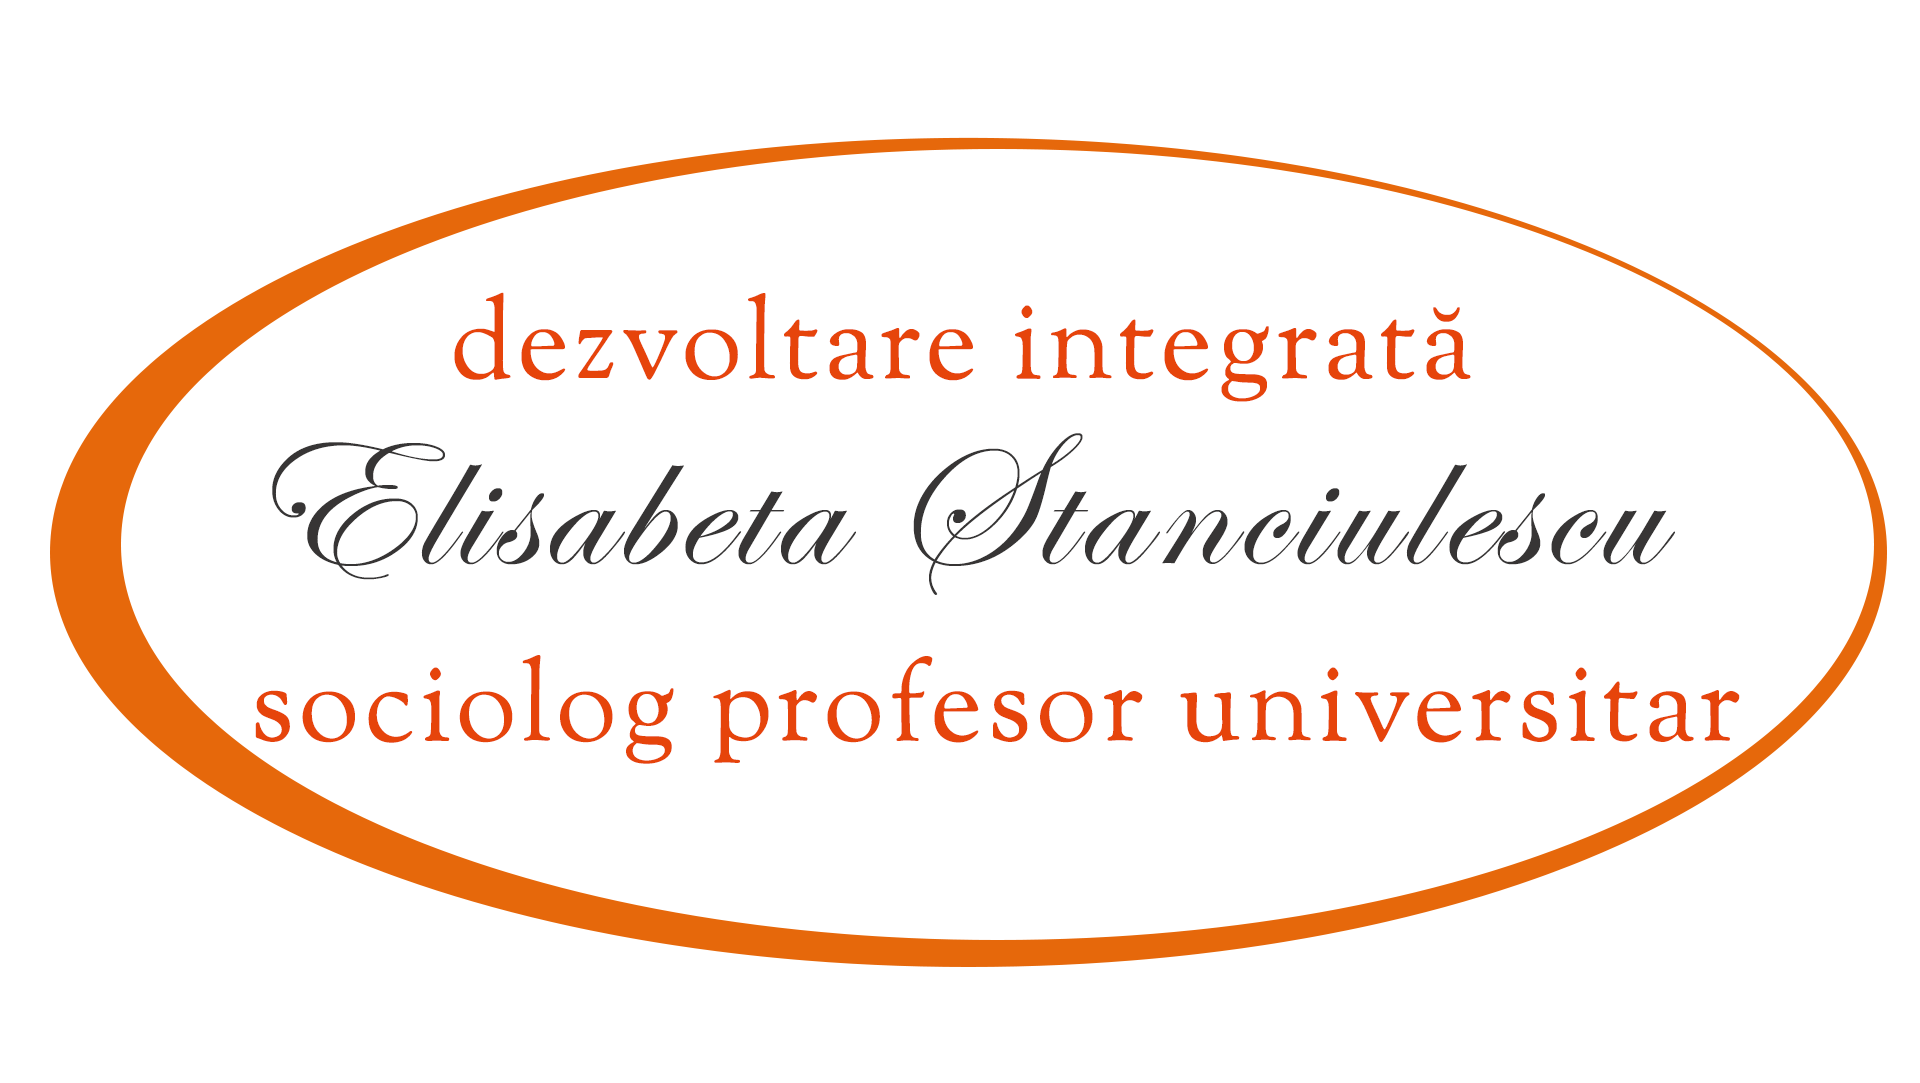 Coaching-Dezvoltare integrate modelul Elisabeta Stănciulescu